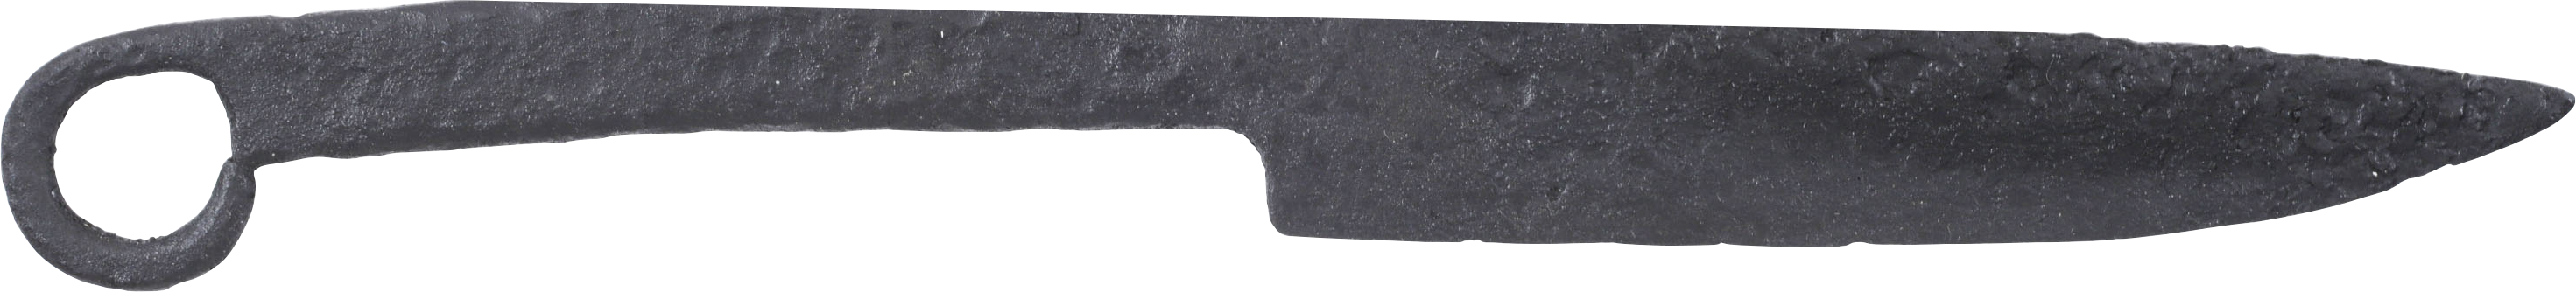 CELTIC RING POMMEL KNIFE 3RD-1ST CENTURY BC